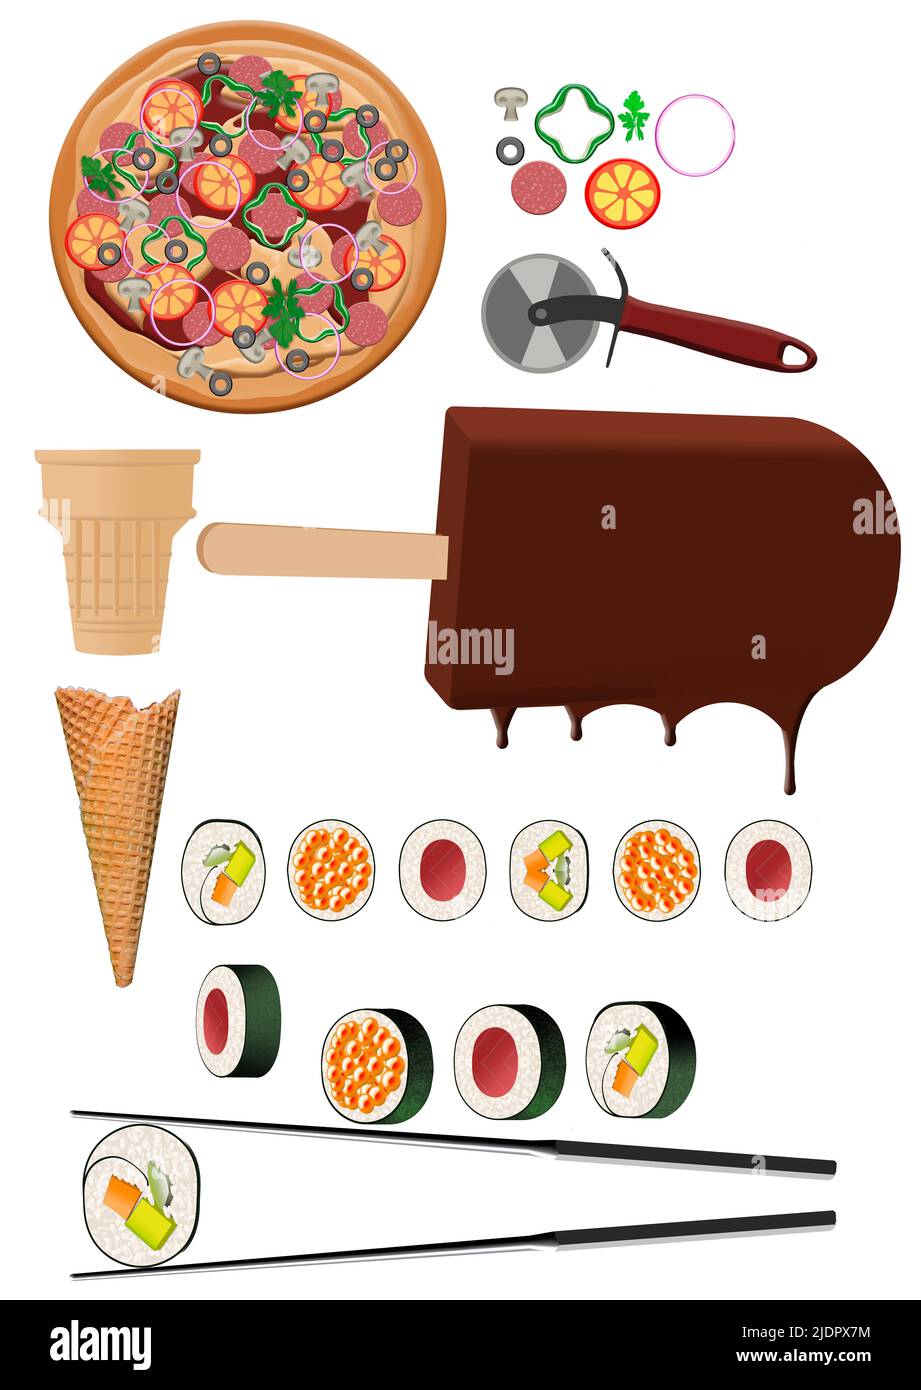 La pizza, el helado y el sushi se consideran ilustraciones en 3-d que se utilizan para elementos gráficos. Foto de stock